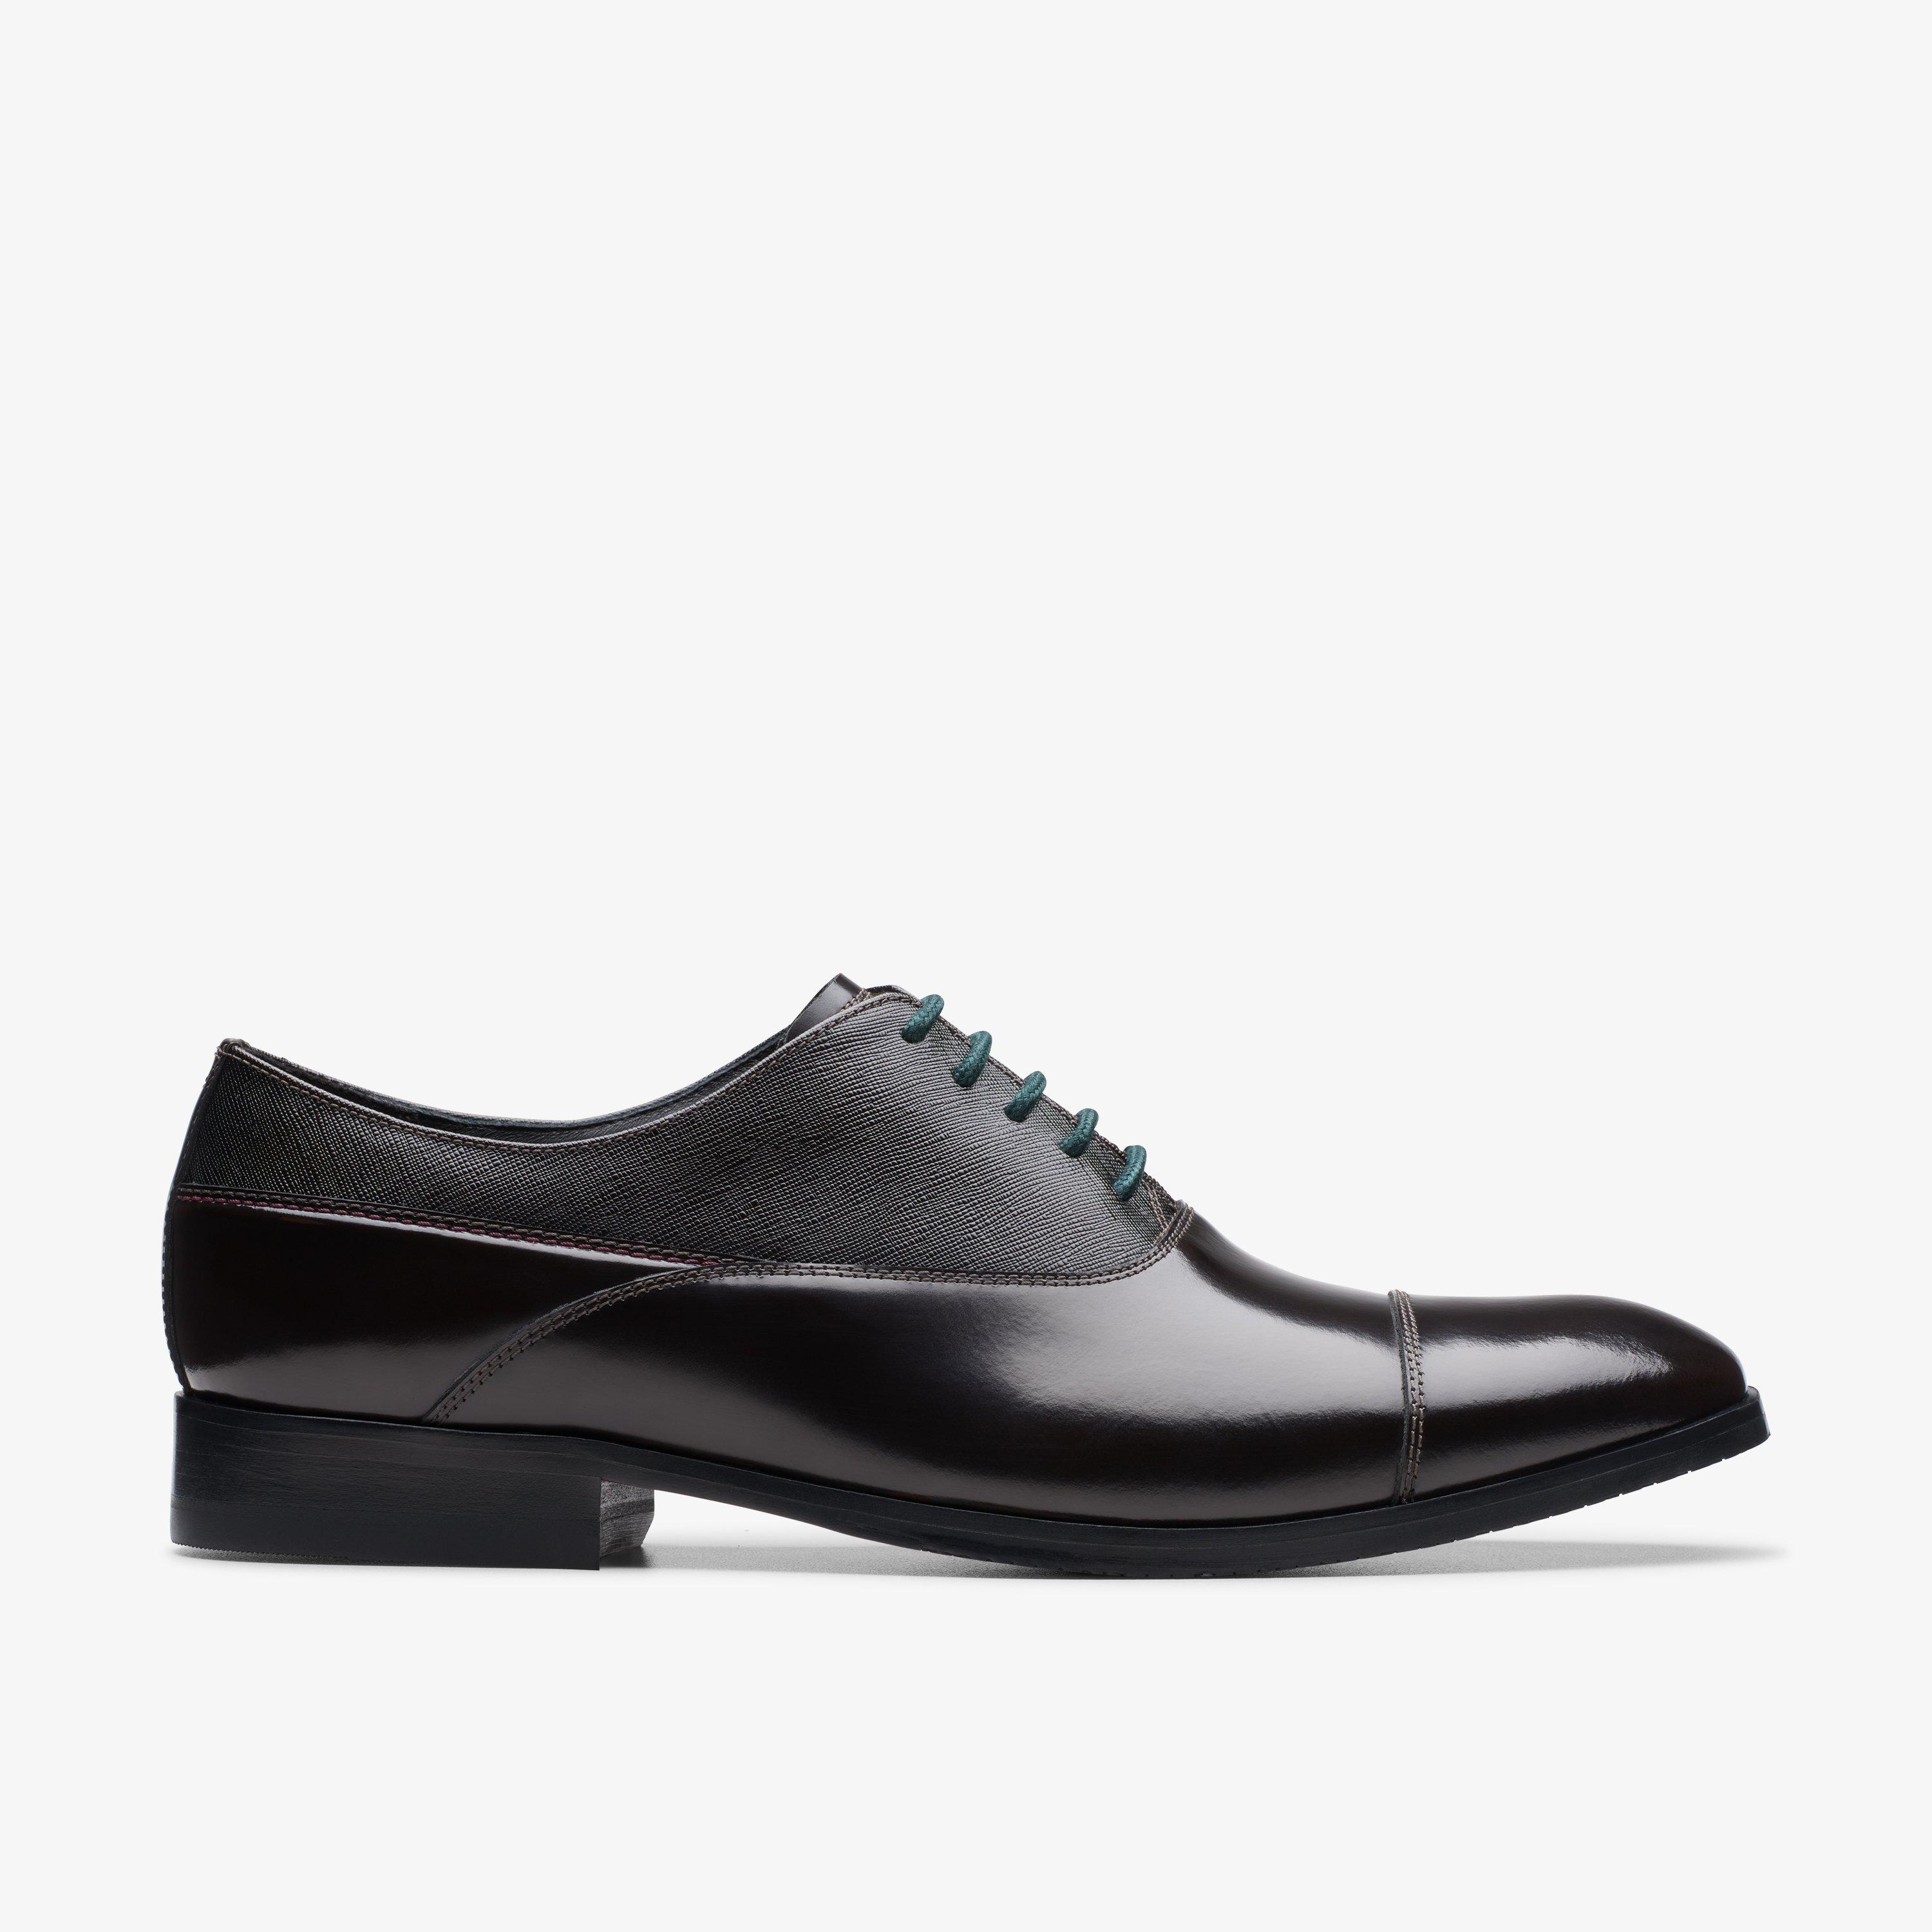 Clarks Craftdean Cap Mens Formal Shoes Colour: Black - Size: 10